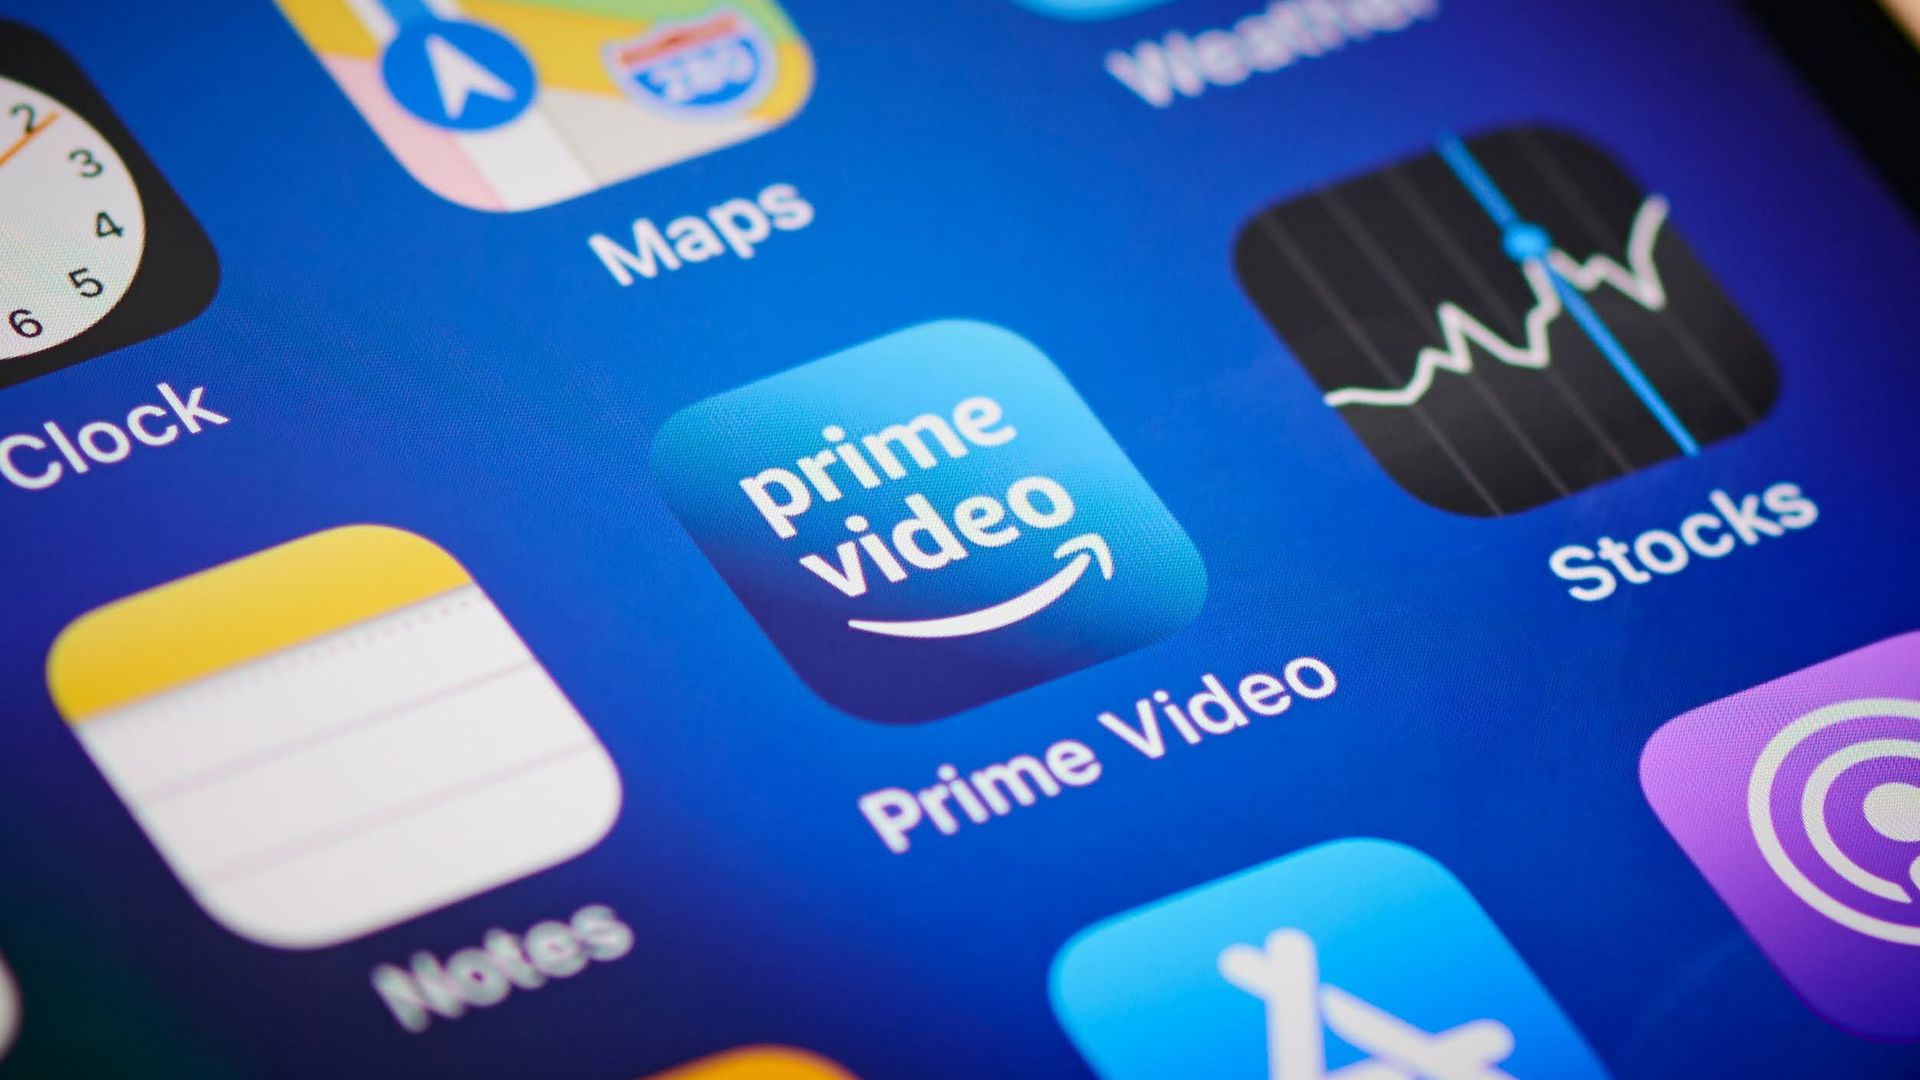 Avrupa'da Amazon Prime fiyatına zam geliyor: Türkiye etkilenecek mi?